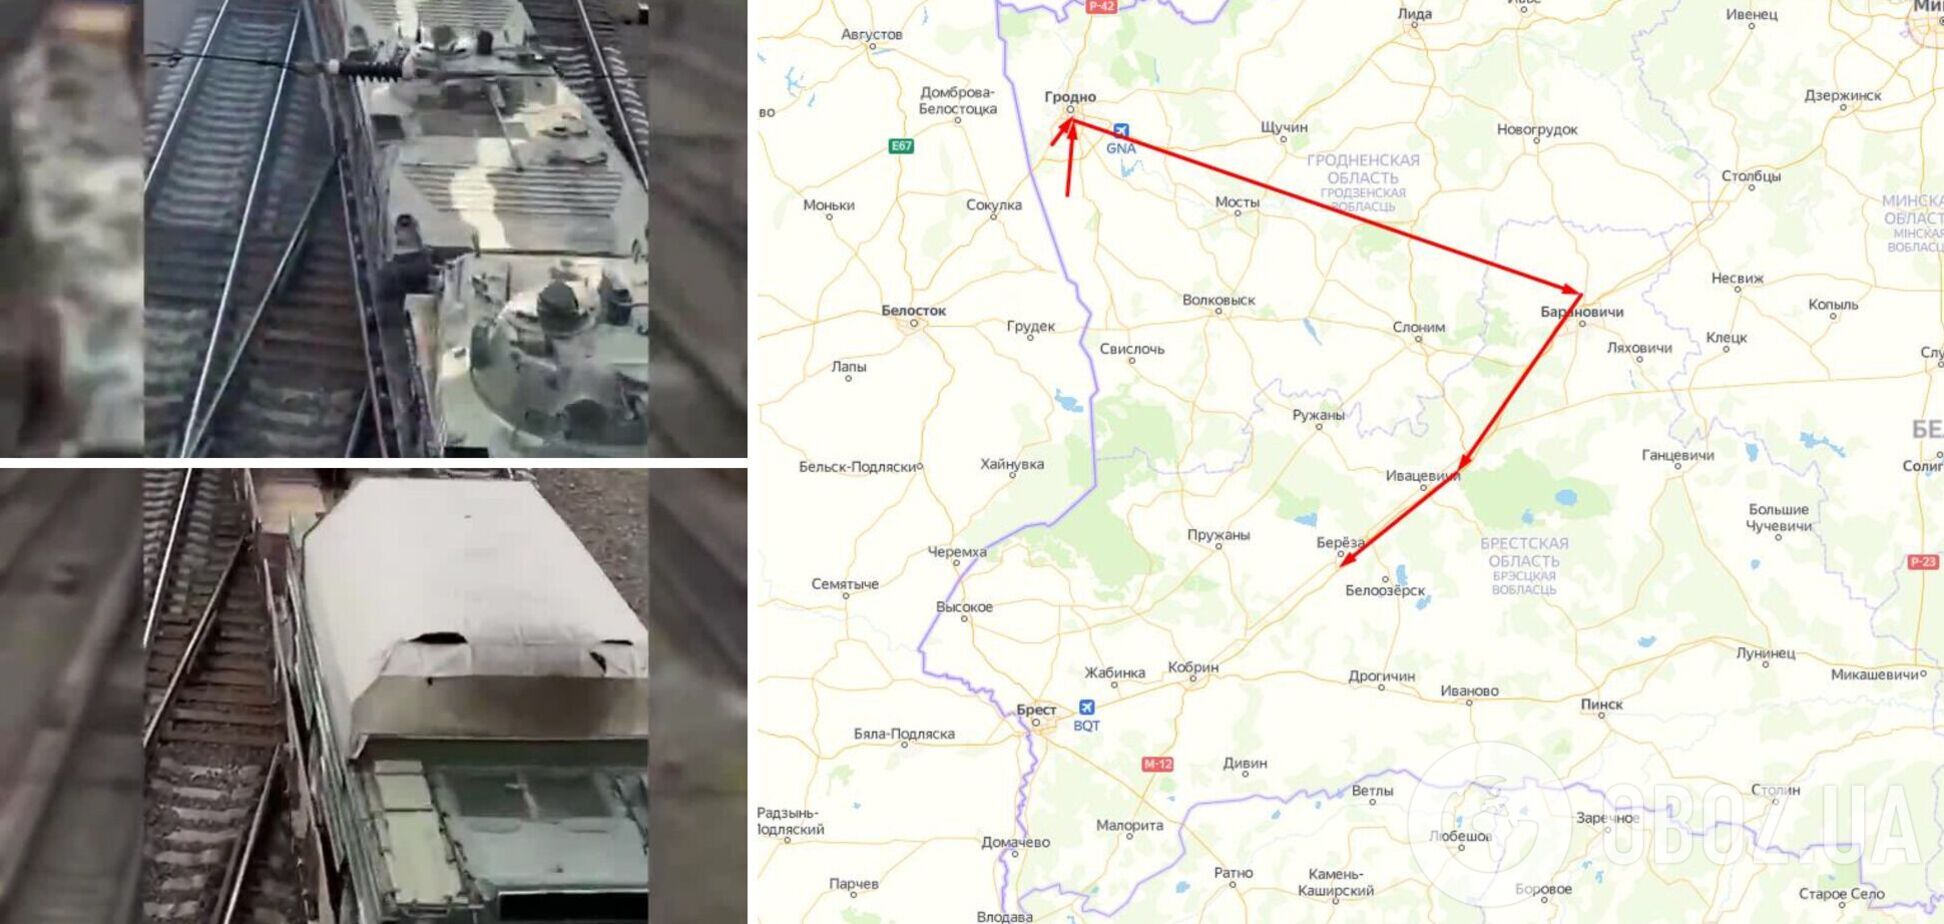 Білорусь стягує бронетехніку до кордону з Україною: помічено ешелон. Відео